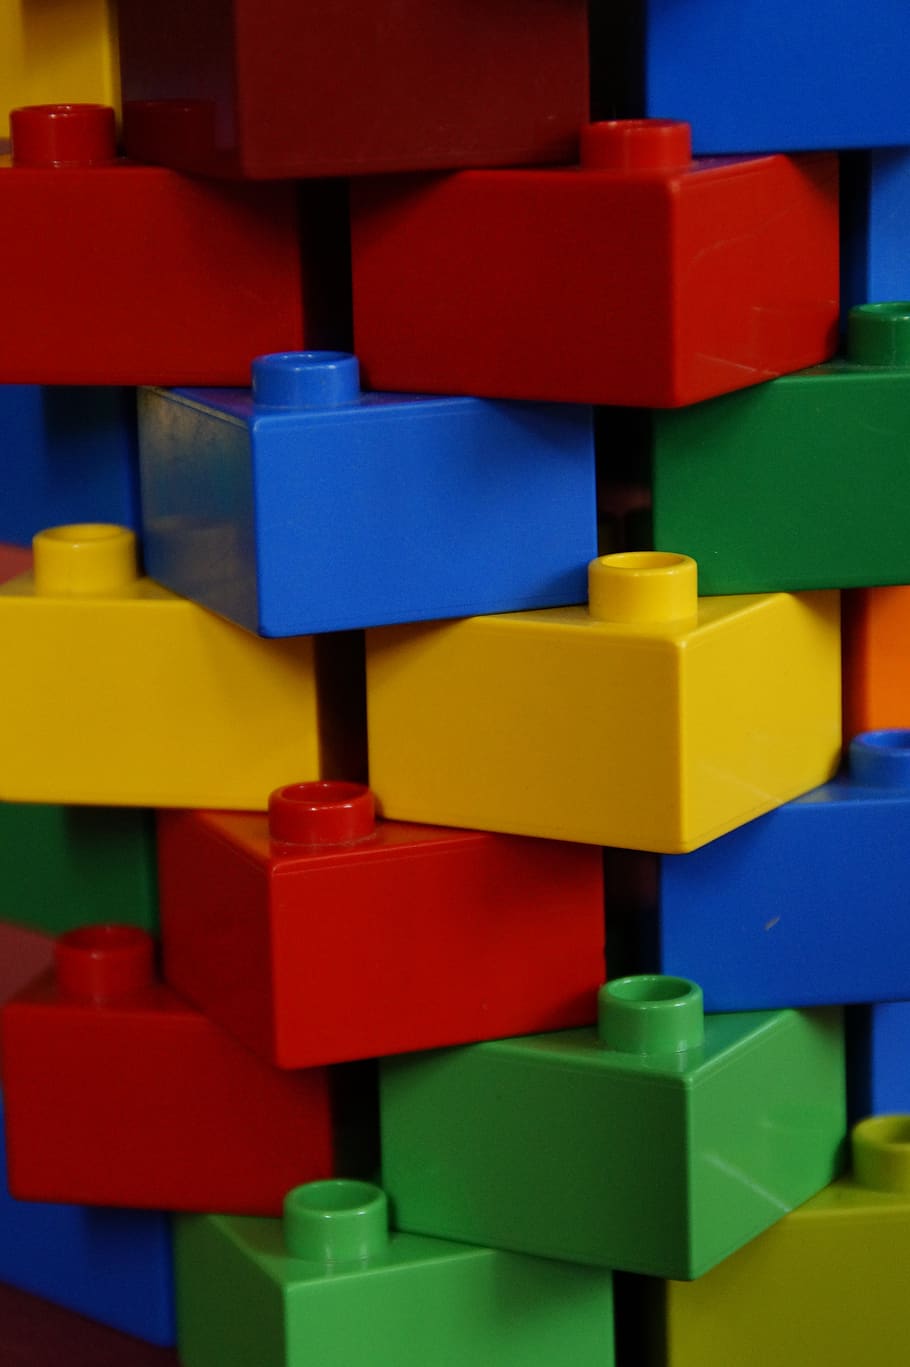 torre, parede de pedra, blocos de lego, coloridos, criança, brinquedos para crianças, jogar, brinquedos, pedras, duplo